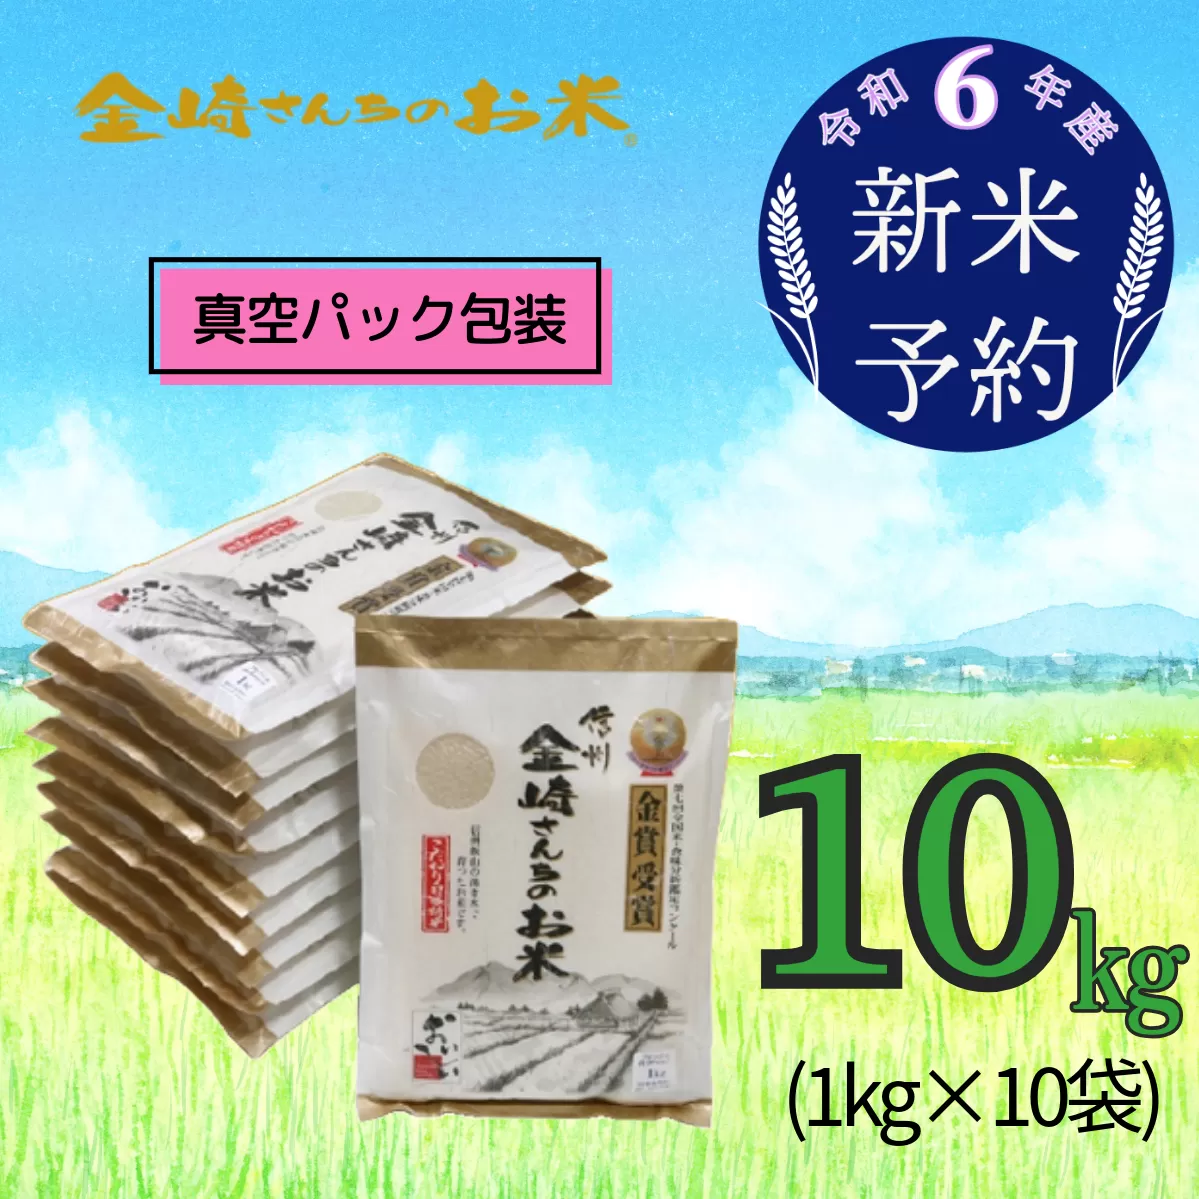 【令和6年産 新米予約】「金崎さんちのお米」10kg(真空パック1kg×10袋)(6-7)